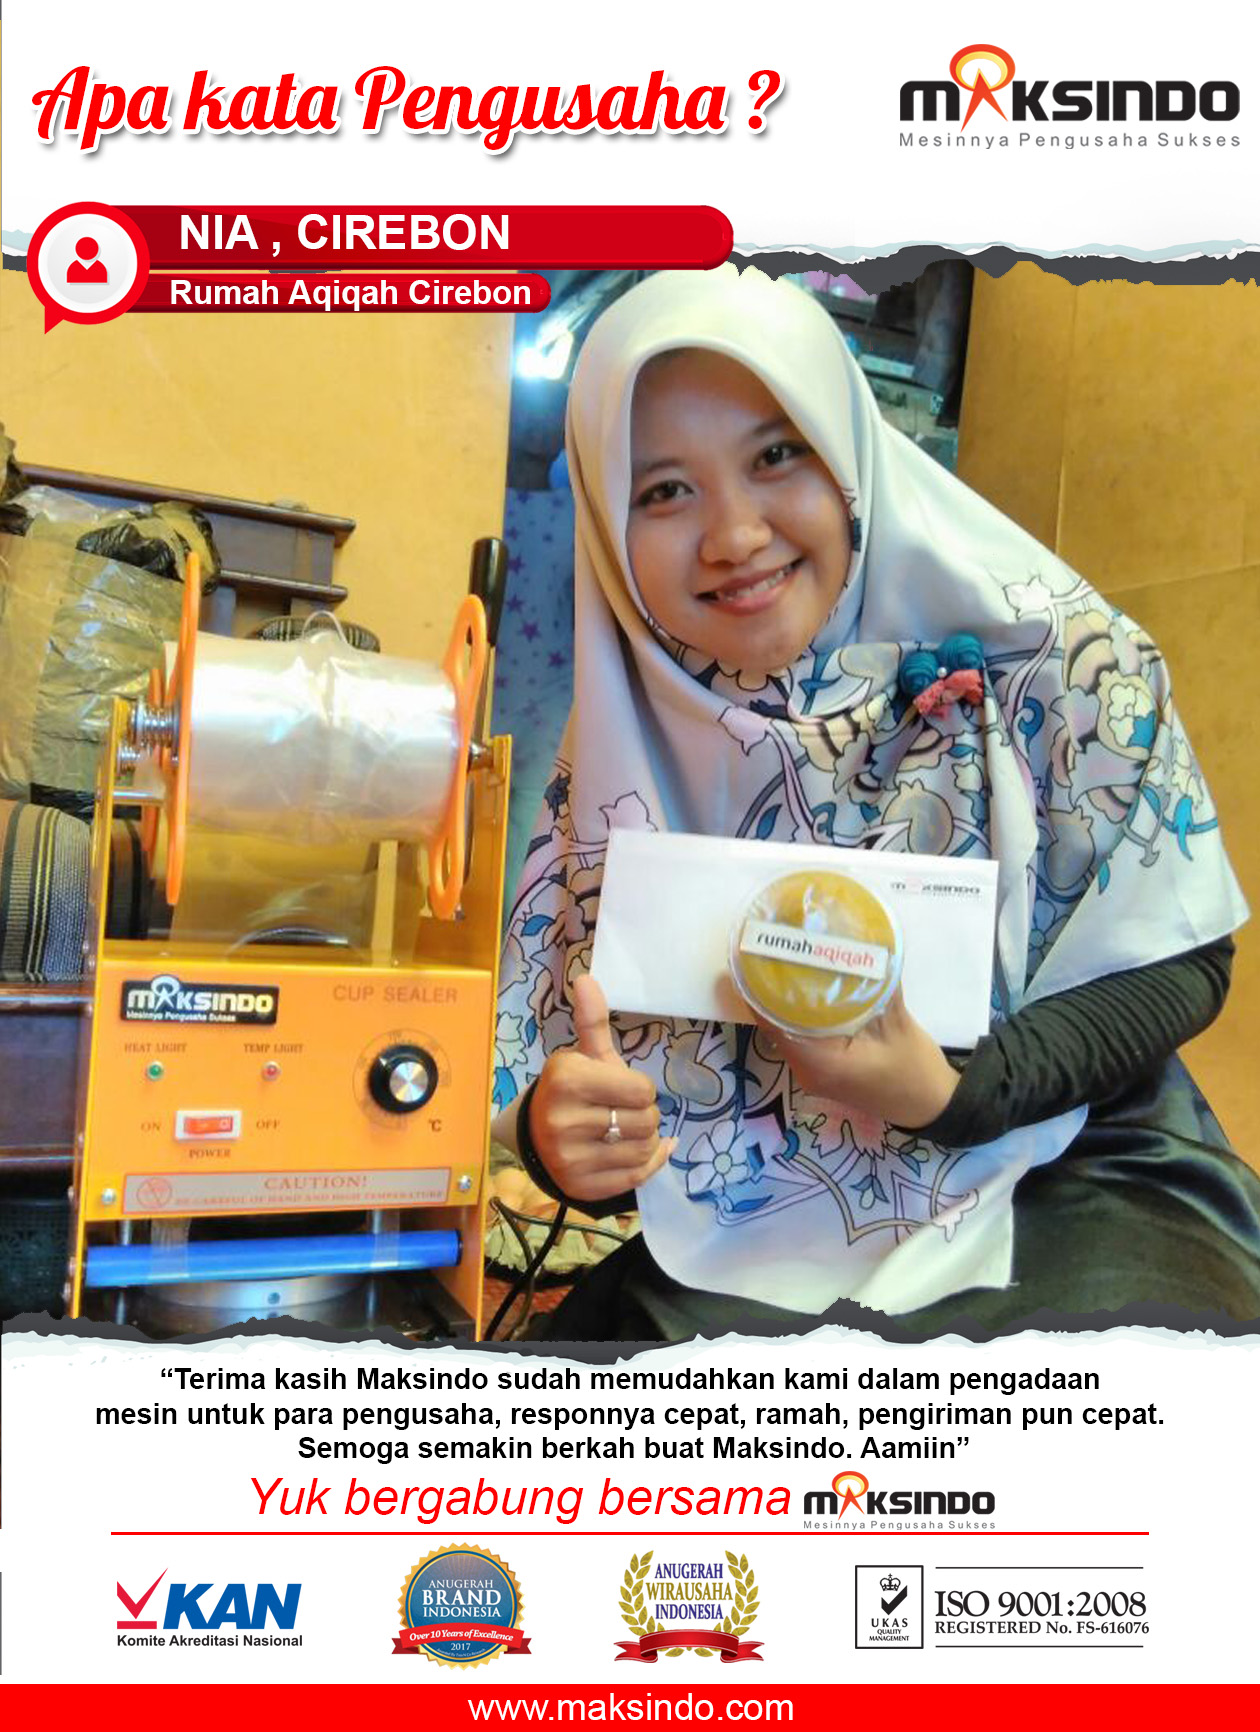 Rumah Aqiqah Cirebon : Usaha Aqiqah Lebih Mudah dengan Mesin Cup Sealer Maksindo